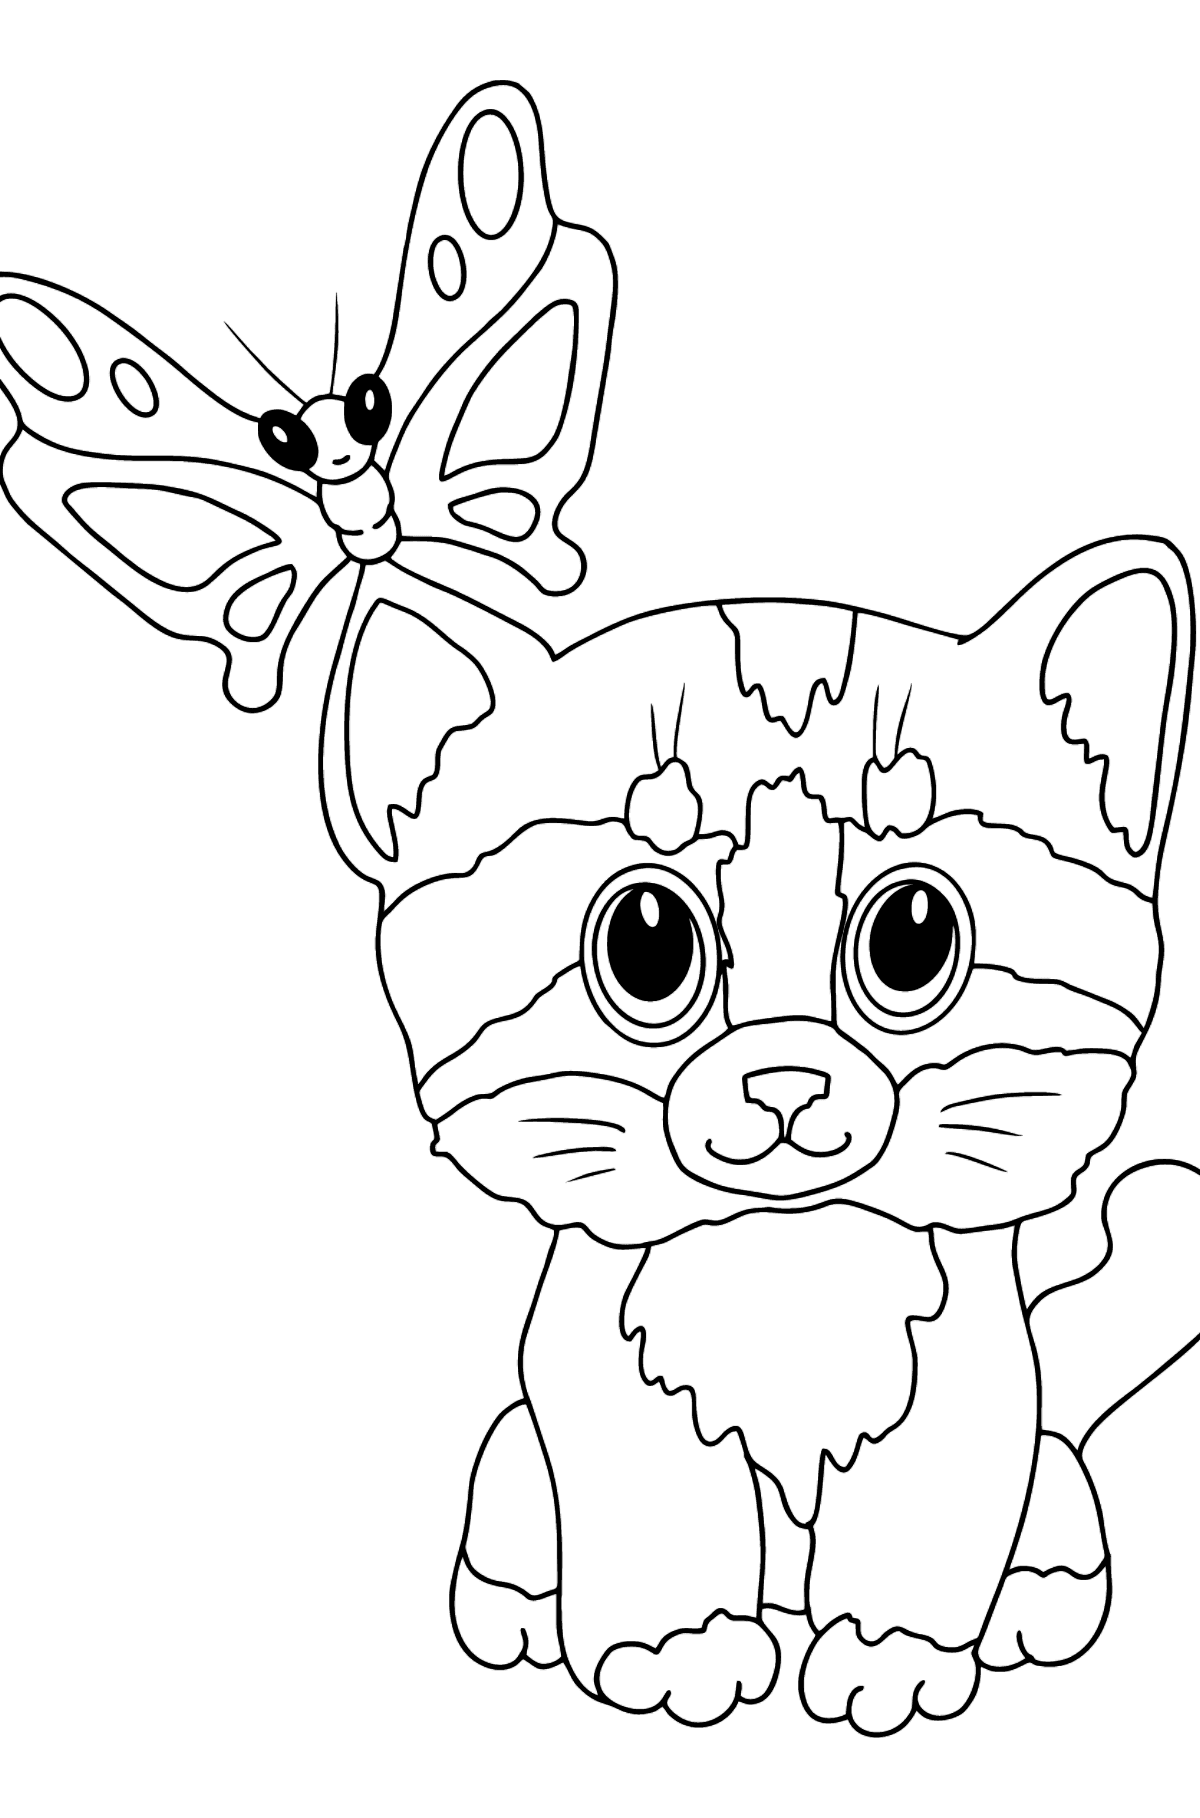 Tegning til fargelegging mild kattunge (enkelt) - Tegninger til fargelegging for barn